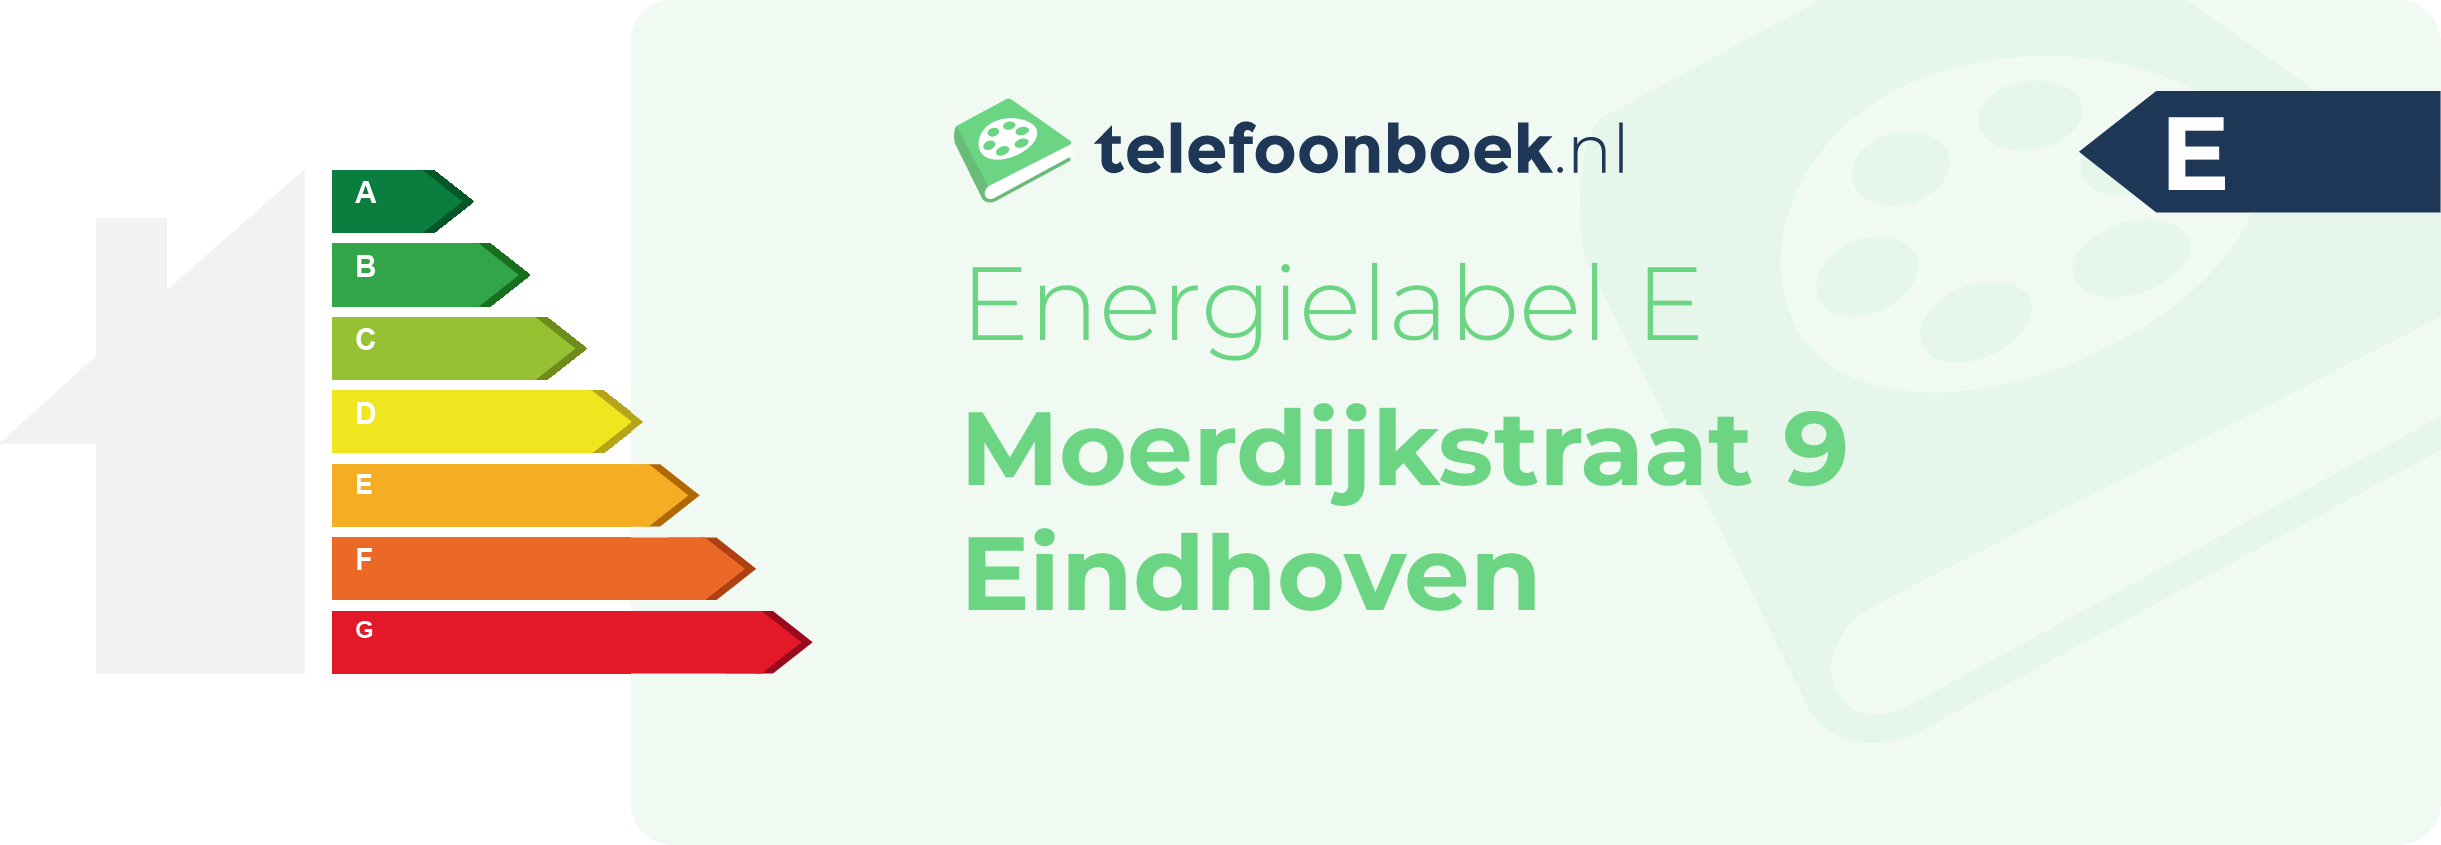 Energielabel Moerdijkstraat 9 Eindhoven